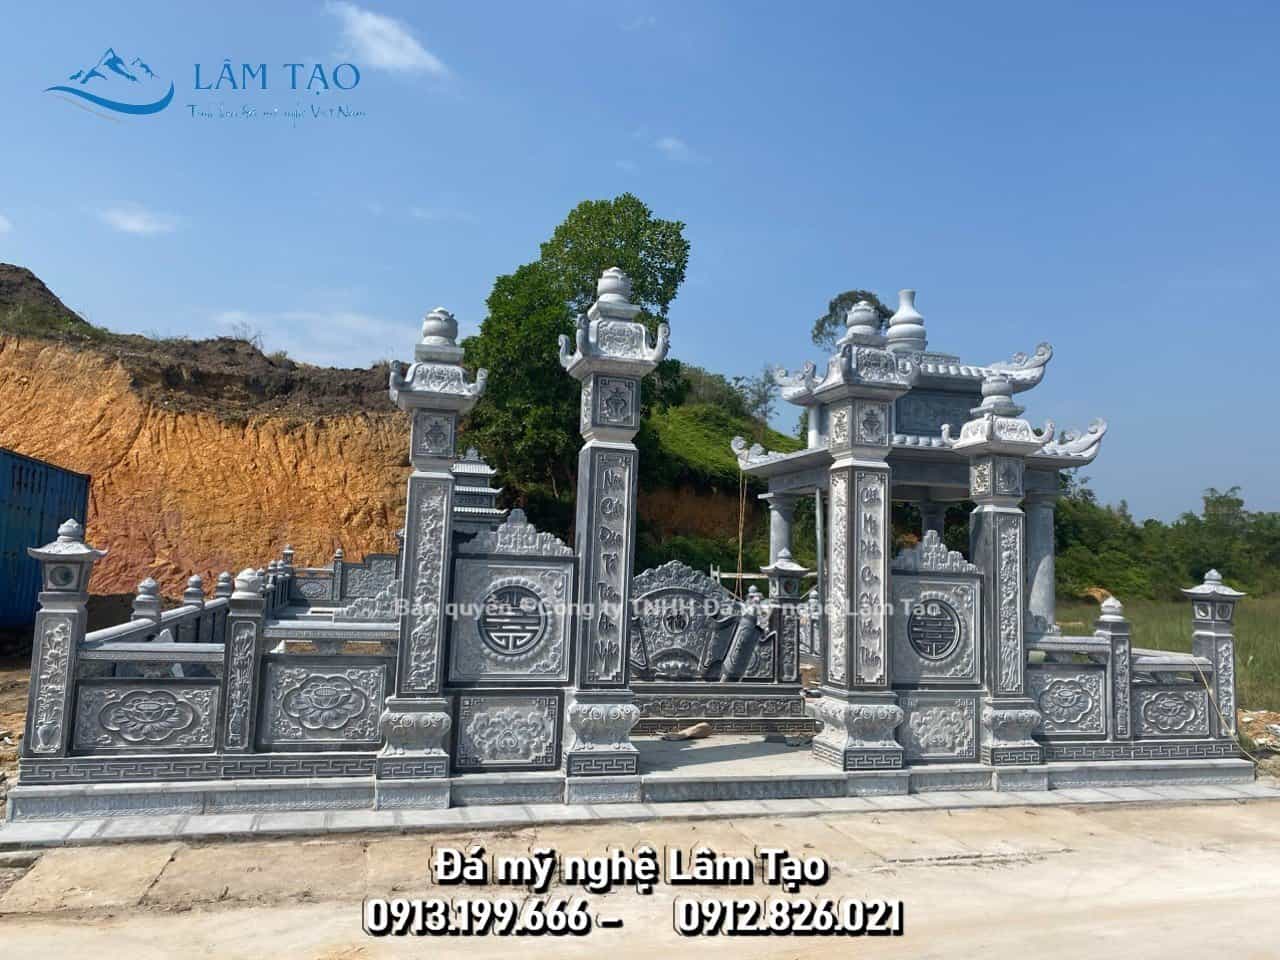 Thi công khu lăng mộ đá xanh cao cấp tại xã Thịnh Đức, thành phố Thái Nguyên